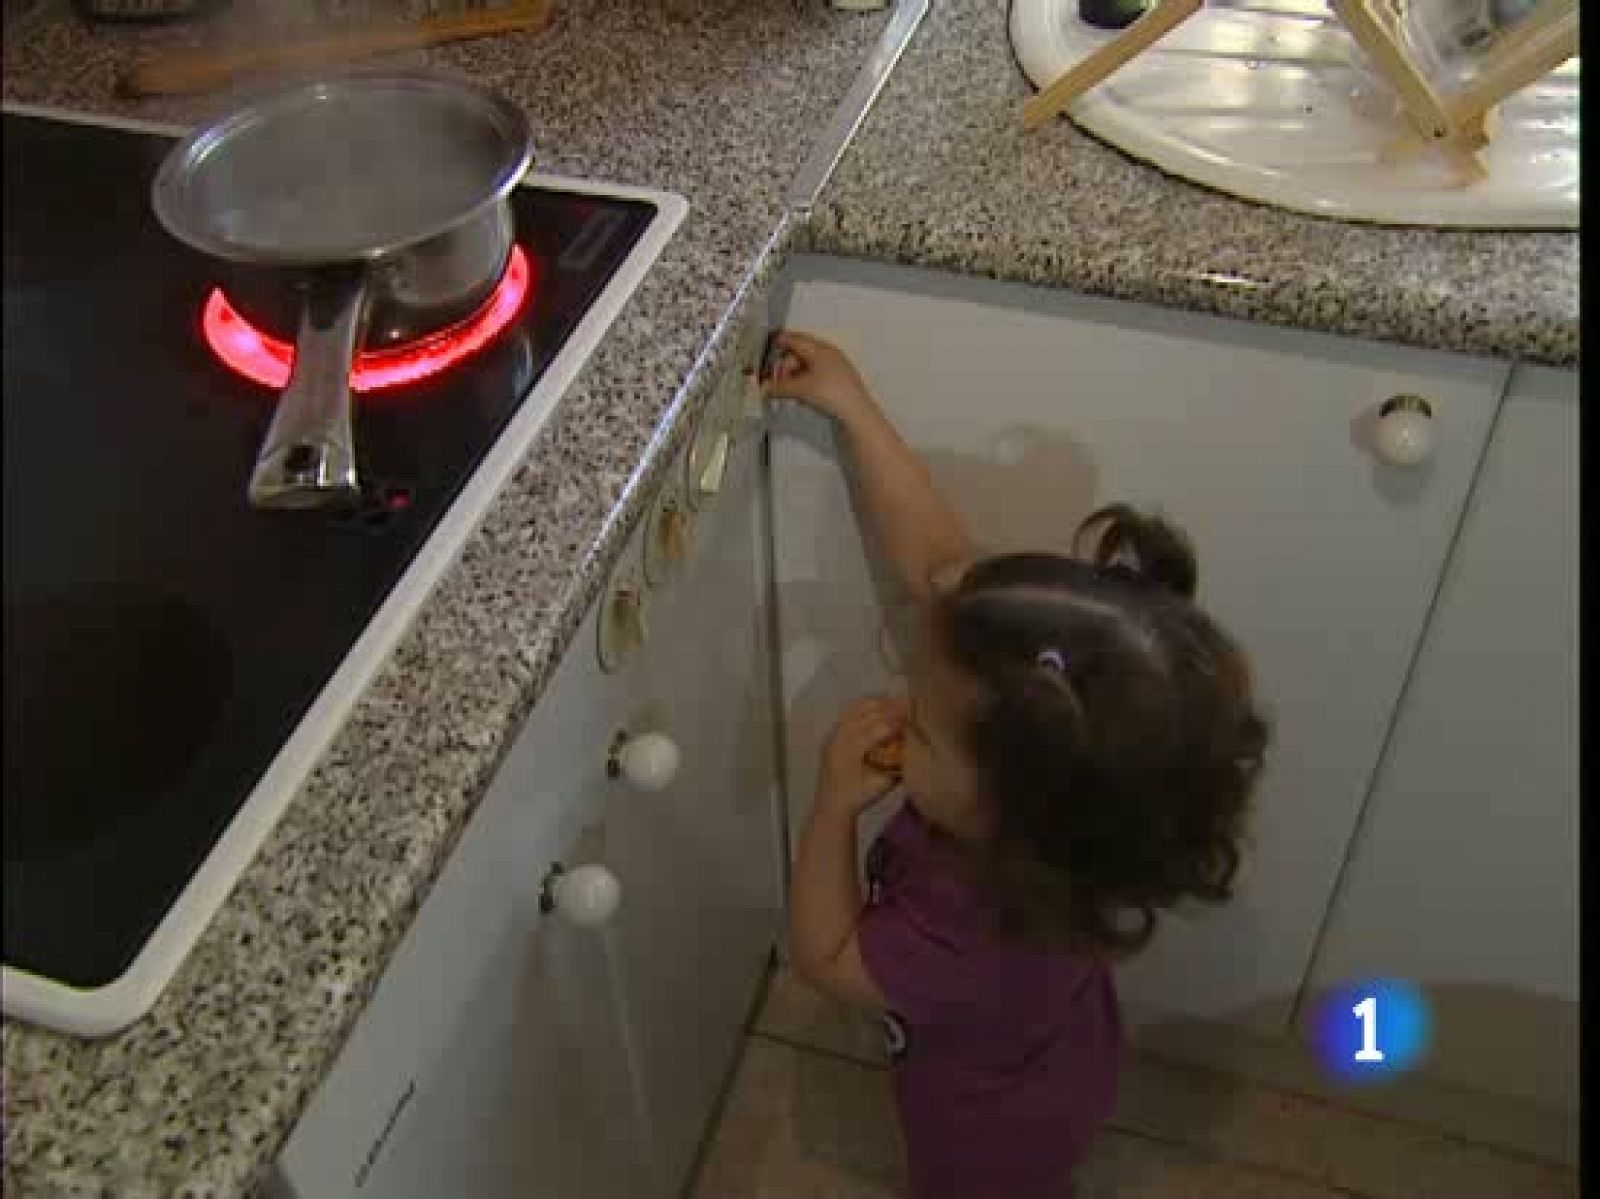 La cocina es el lugar donde más accidentes domésticos tienen los niños menores de cuatro años